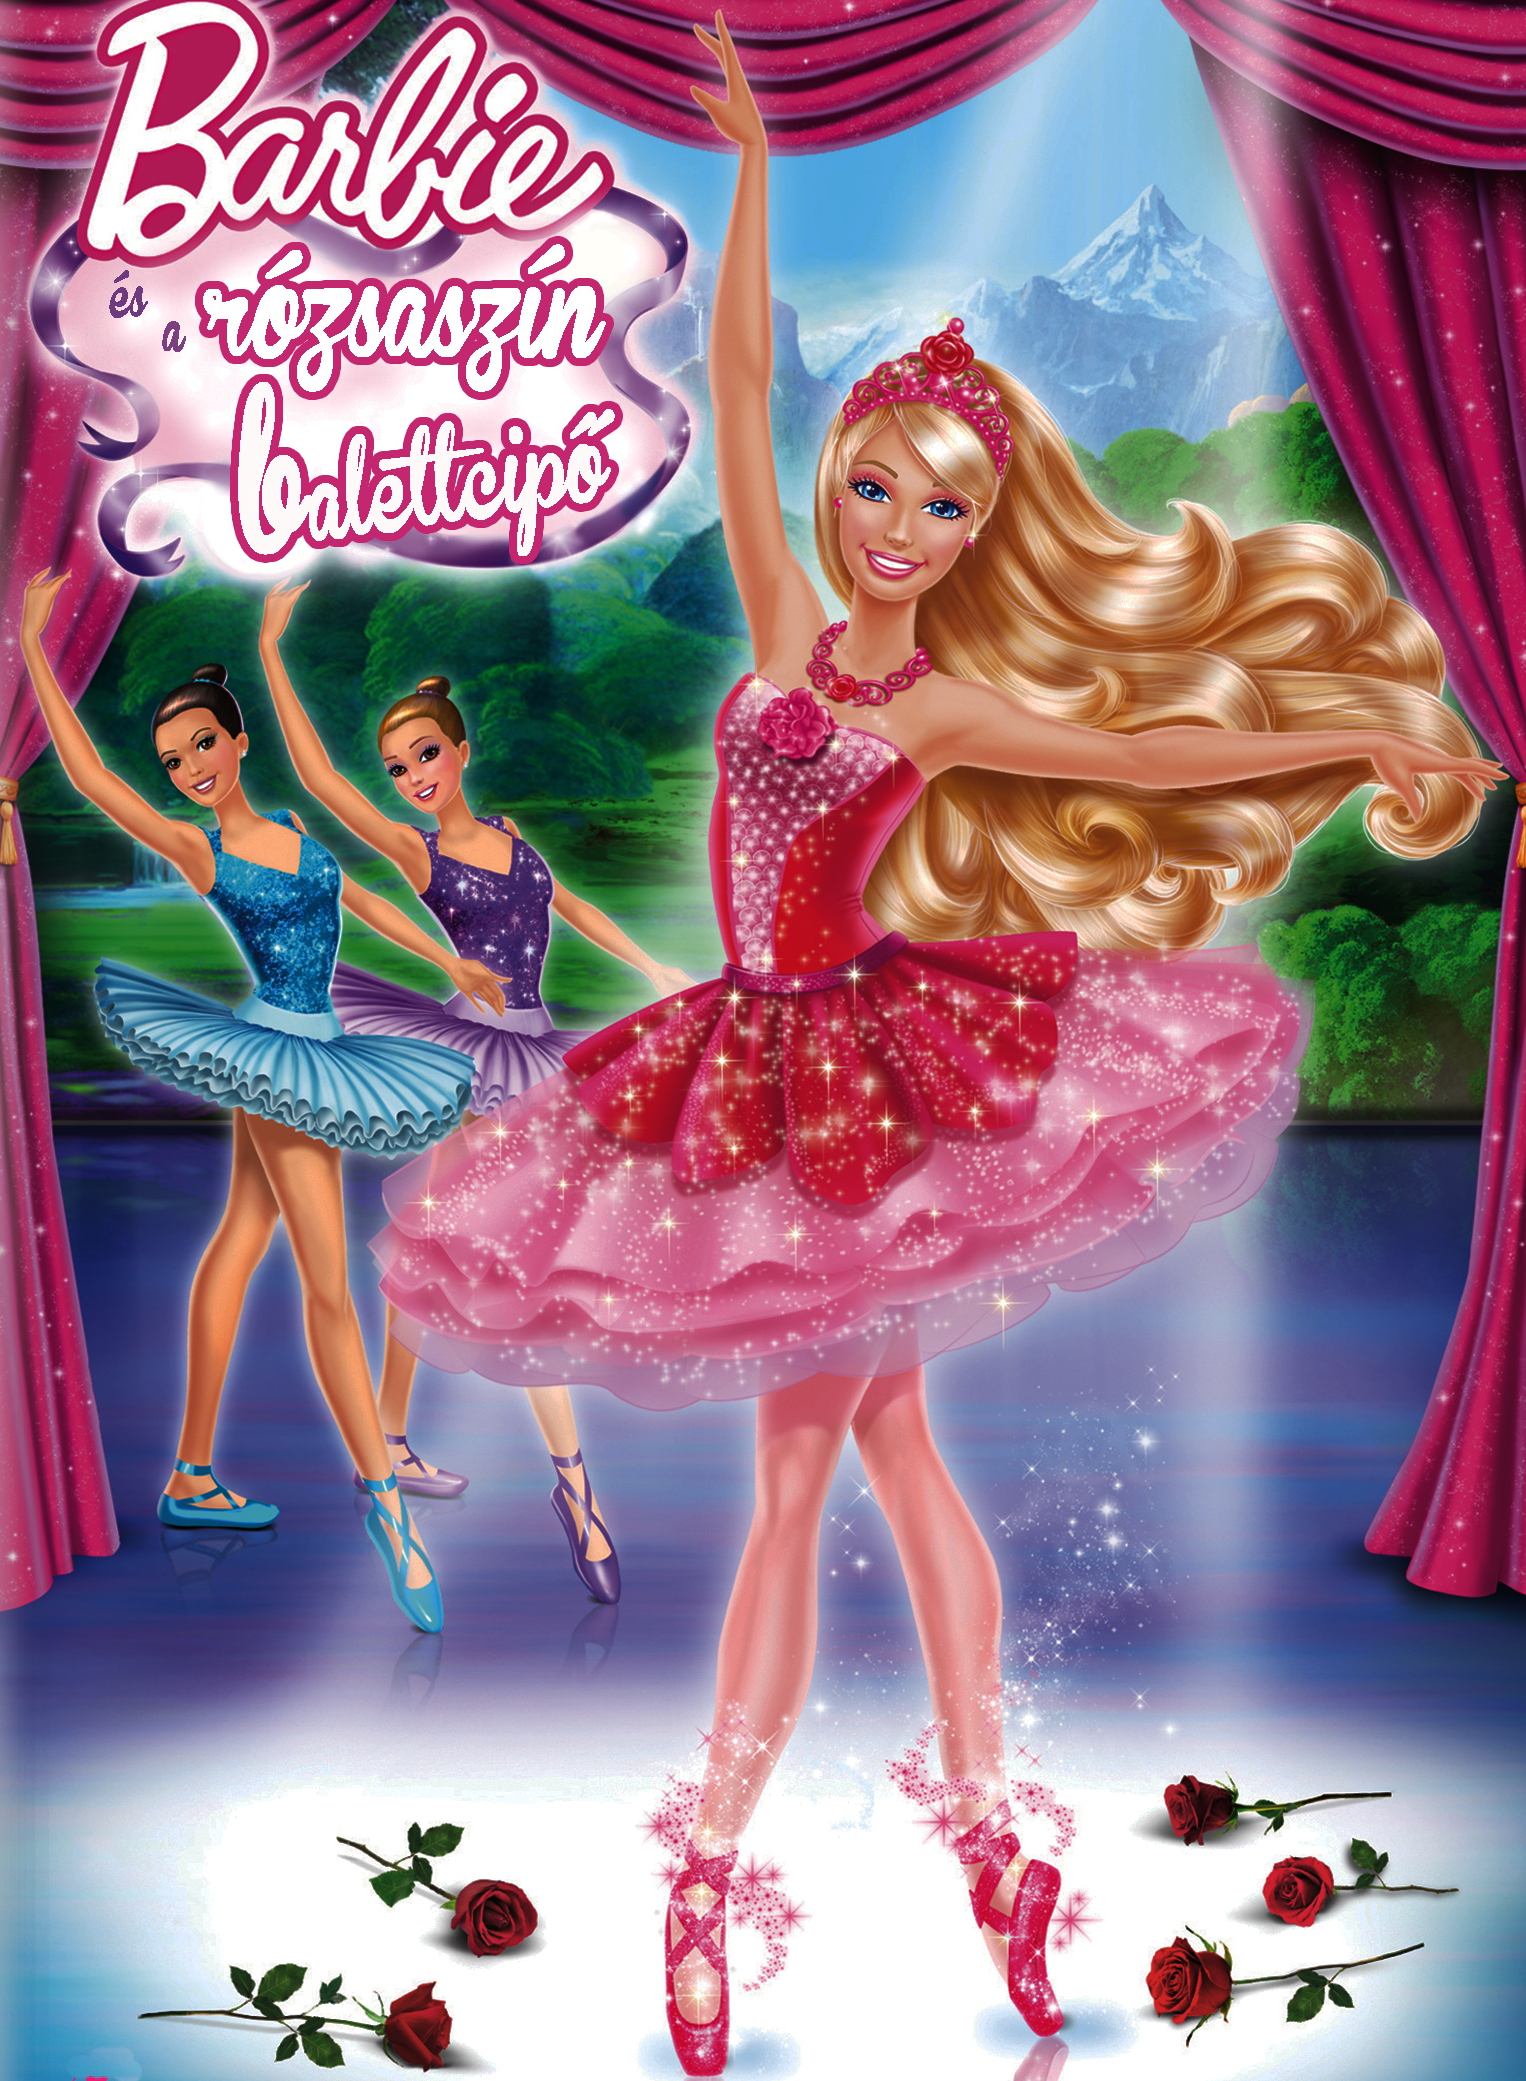 barbie és a rózsaszín balettcipő videa